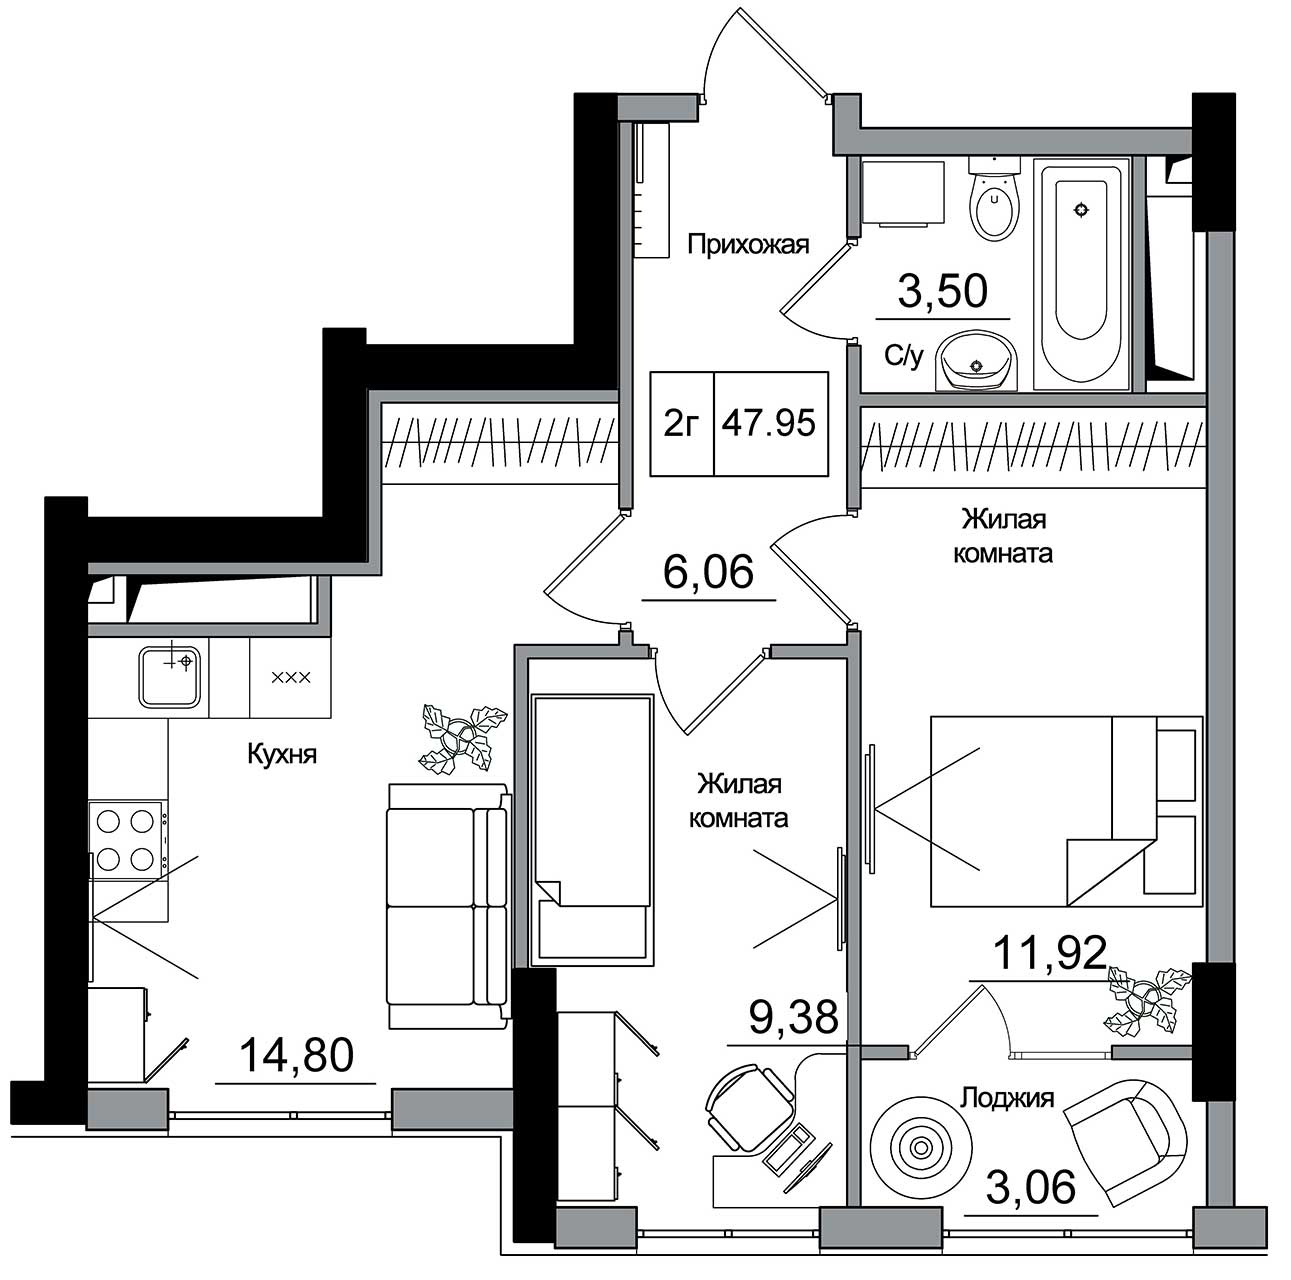 Планування 2-к квартира площею 47.95м2, AB-16-06/00014.